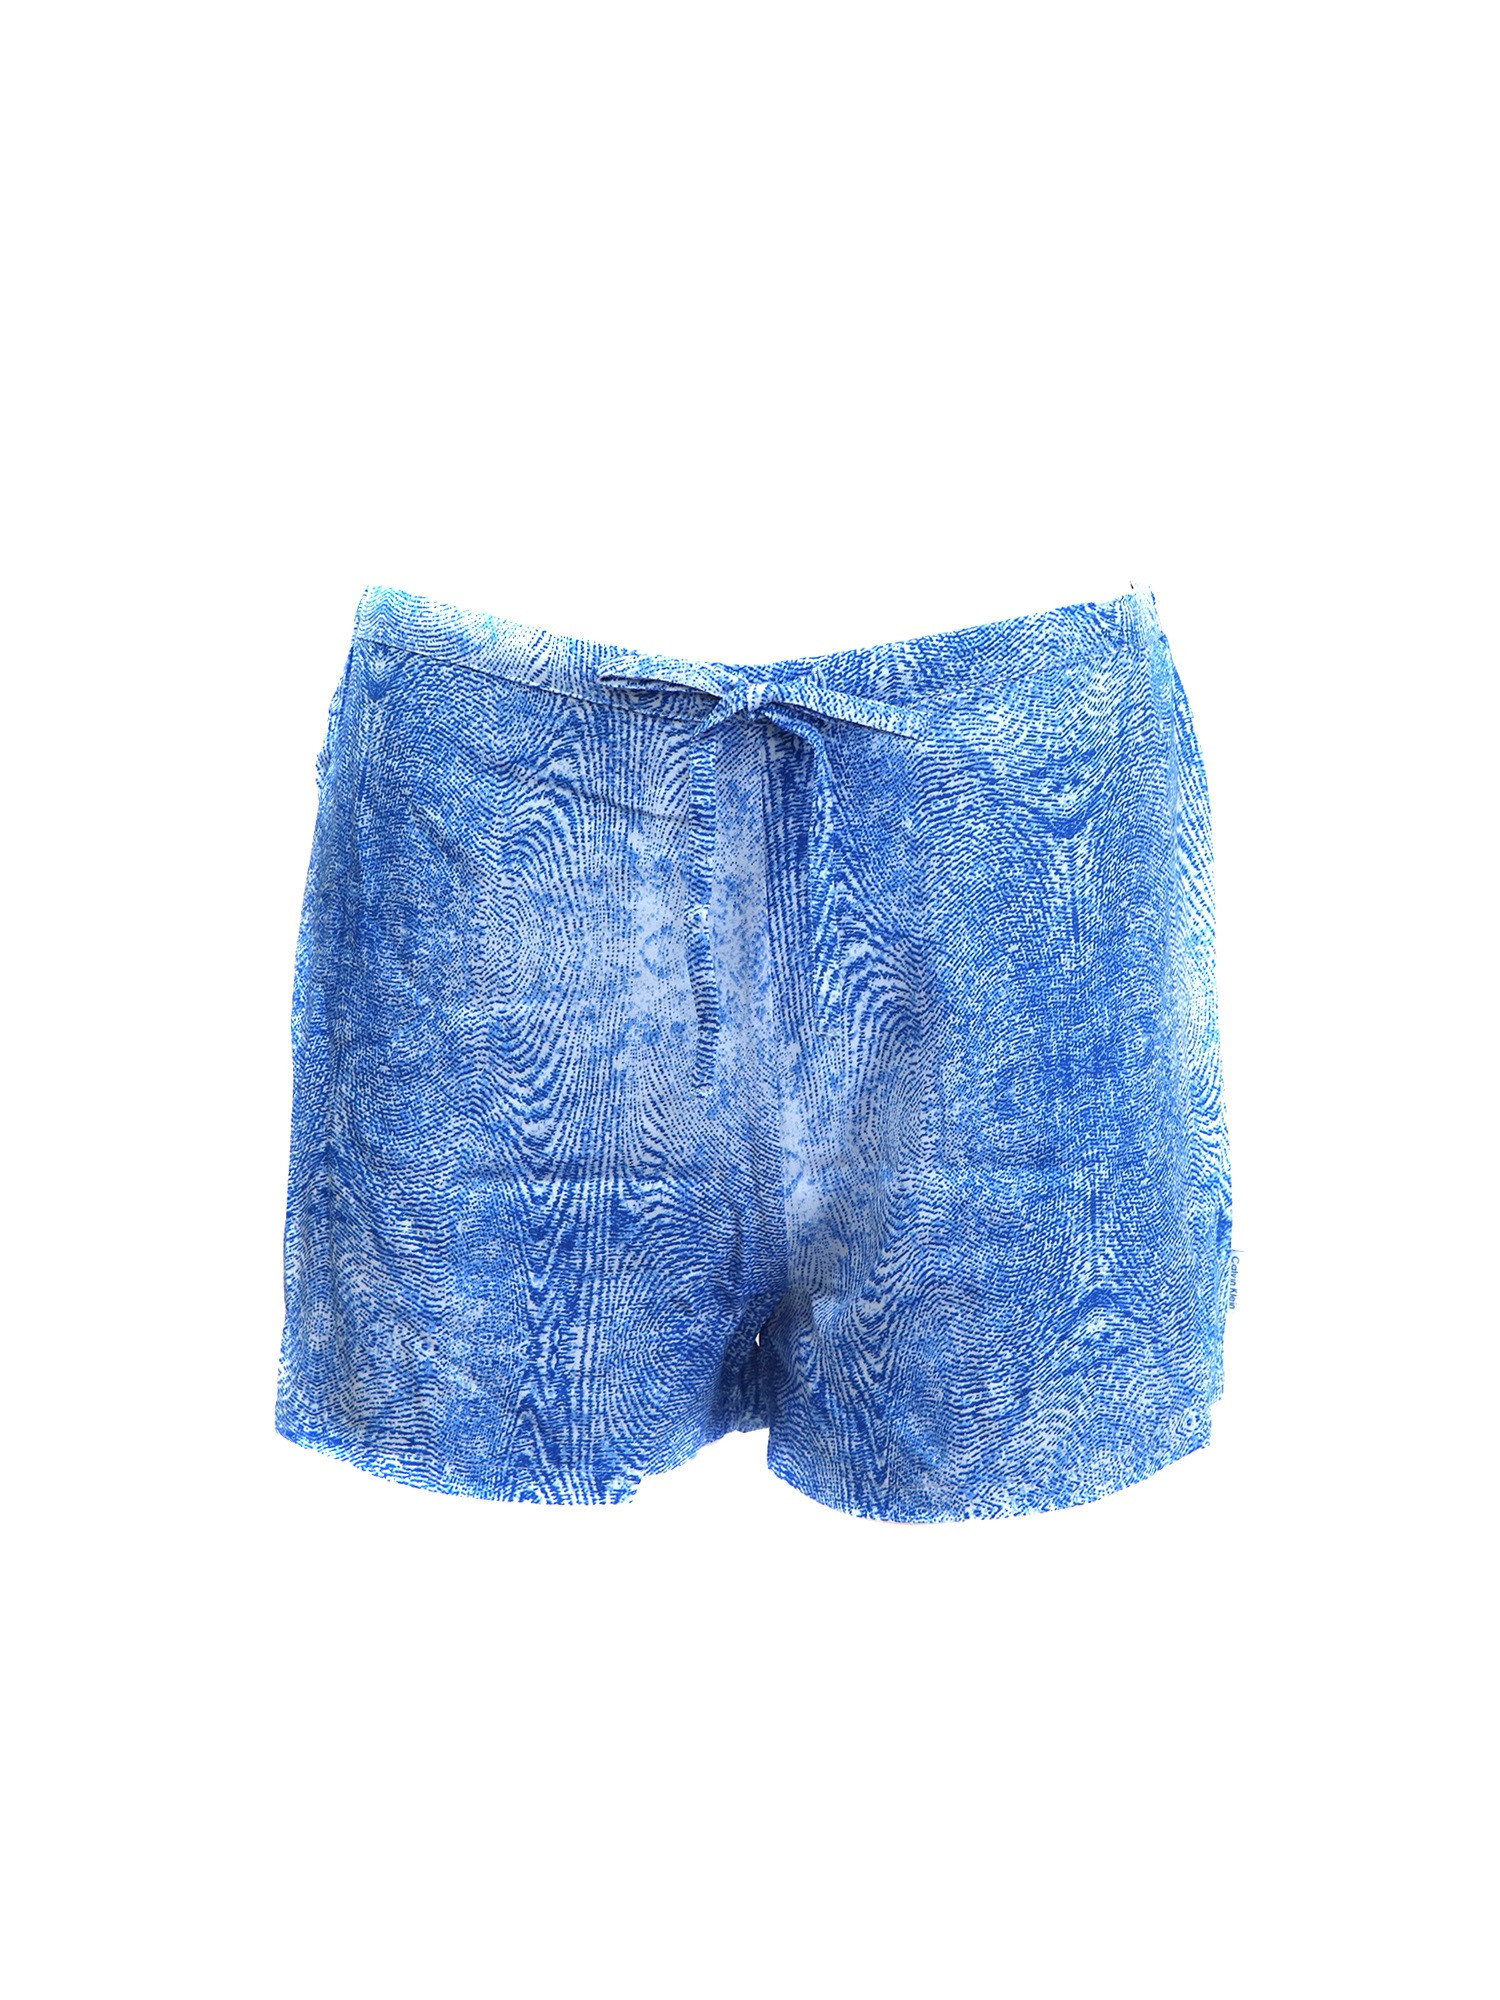 Dámské pyžamové kraťasy model 8741747 modrá modrá S - Calvin Klein